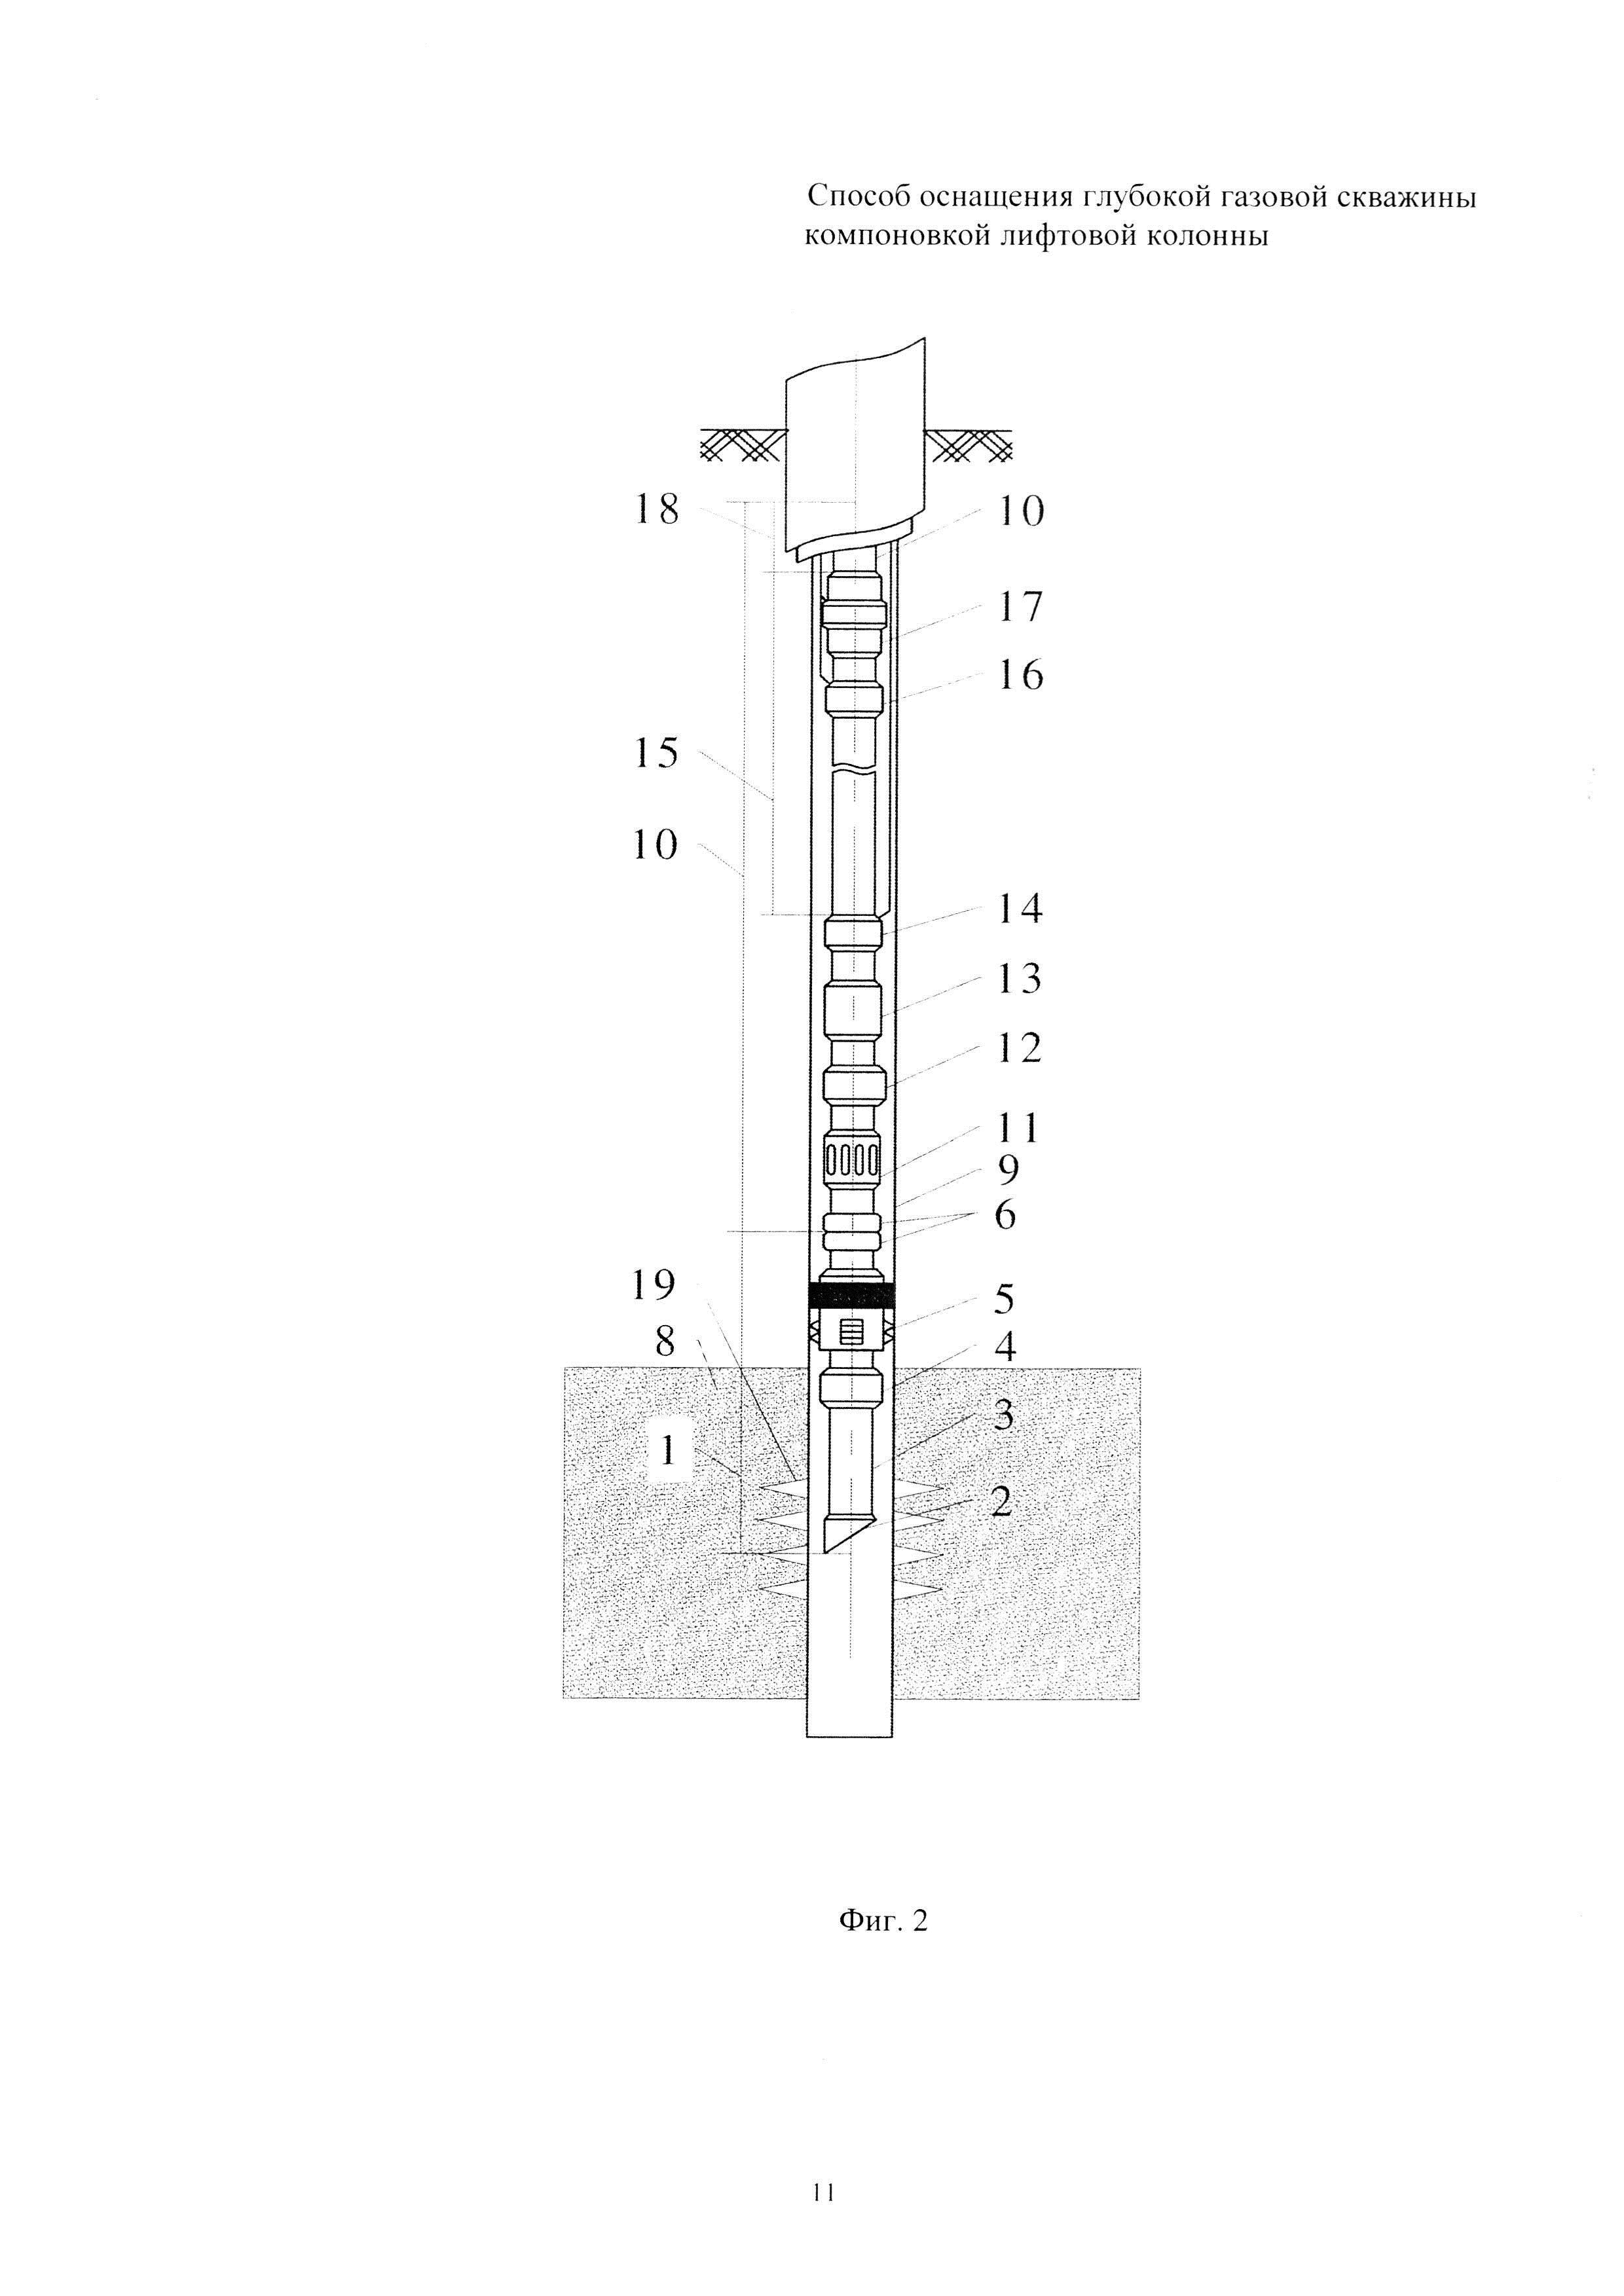 Способ оснащения глубокой газовой скважины компоновкой лифтовой колонны